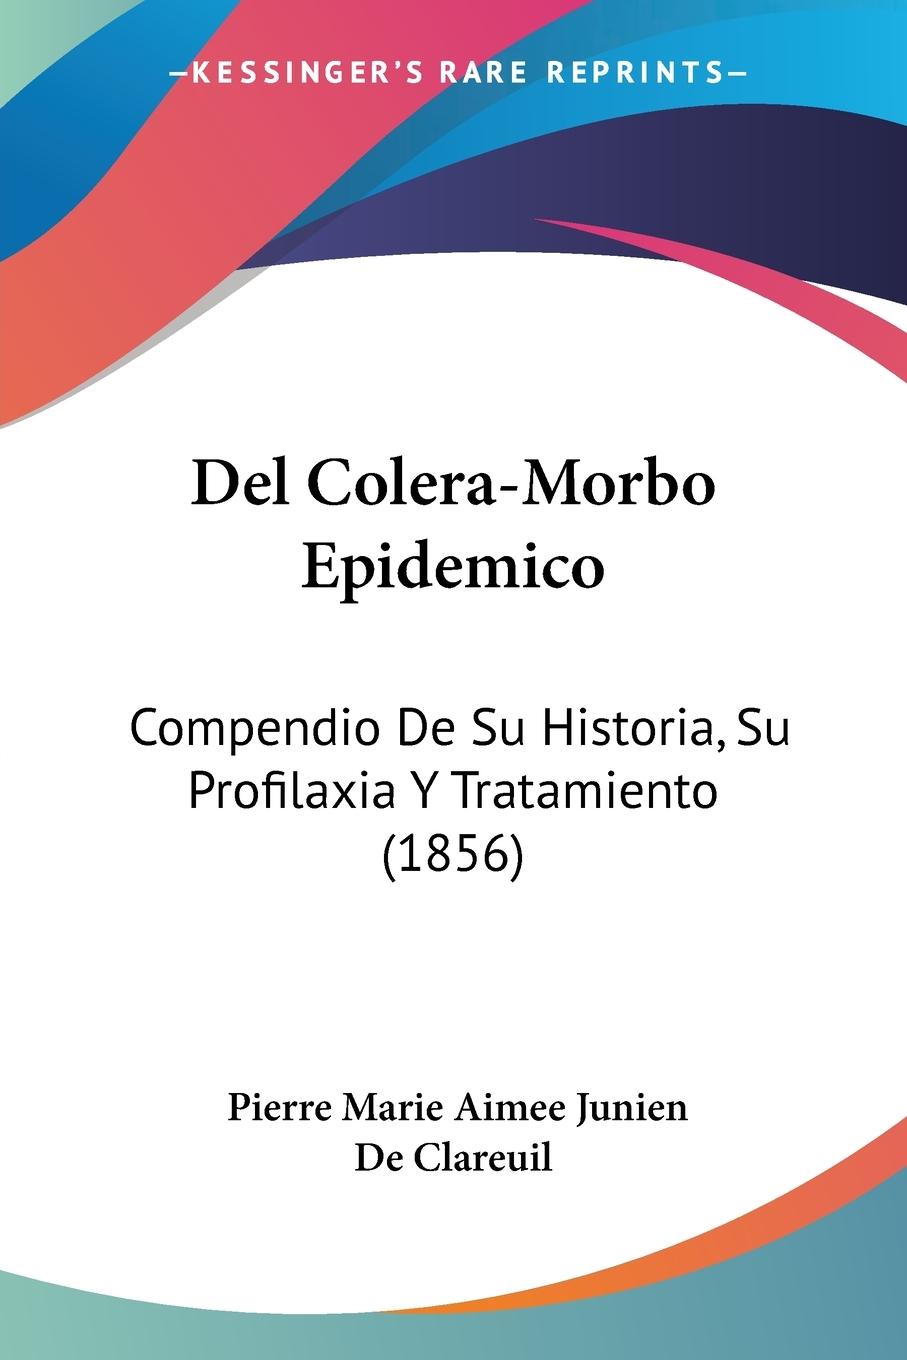 Del Colera-Morbo Epidemico - De Clareuil, Pierre Marie Aimee Junien